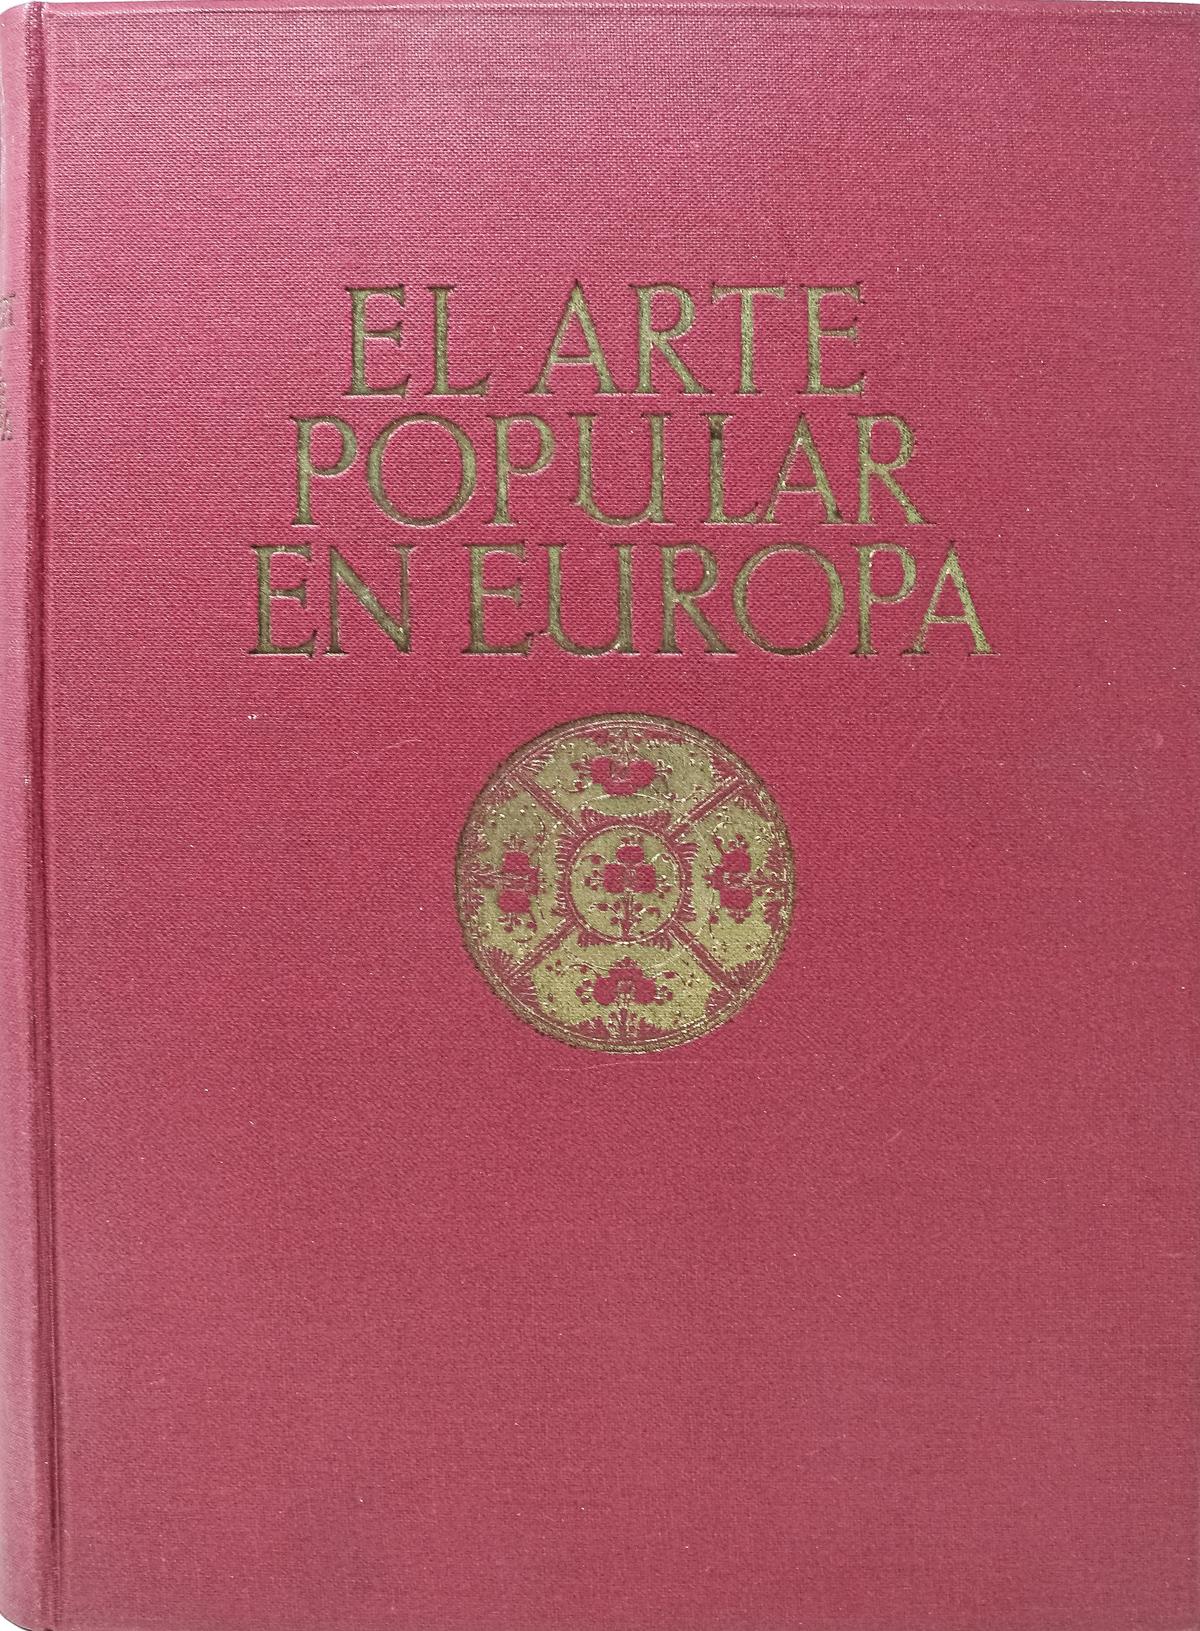 "EL ARTE POPULAR EN EUROPA"